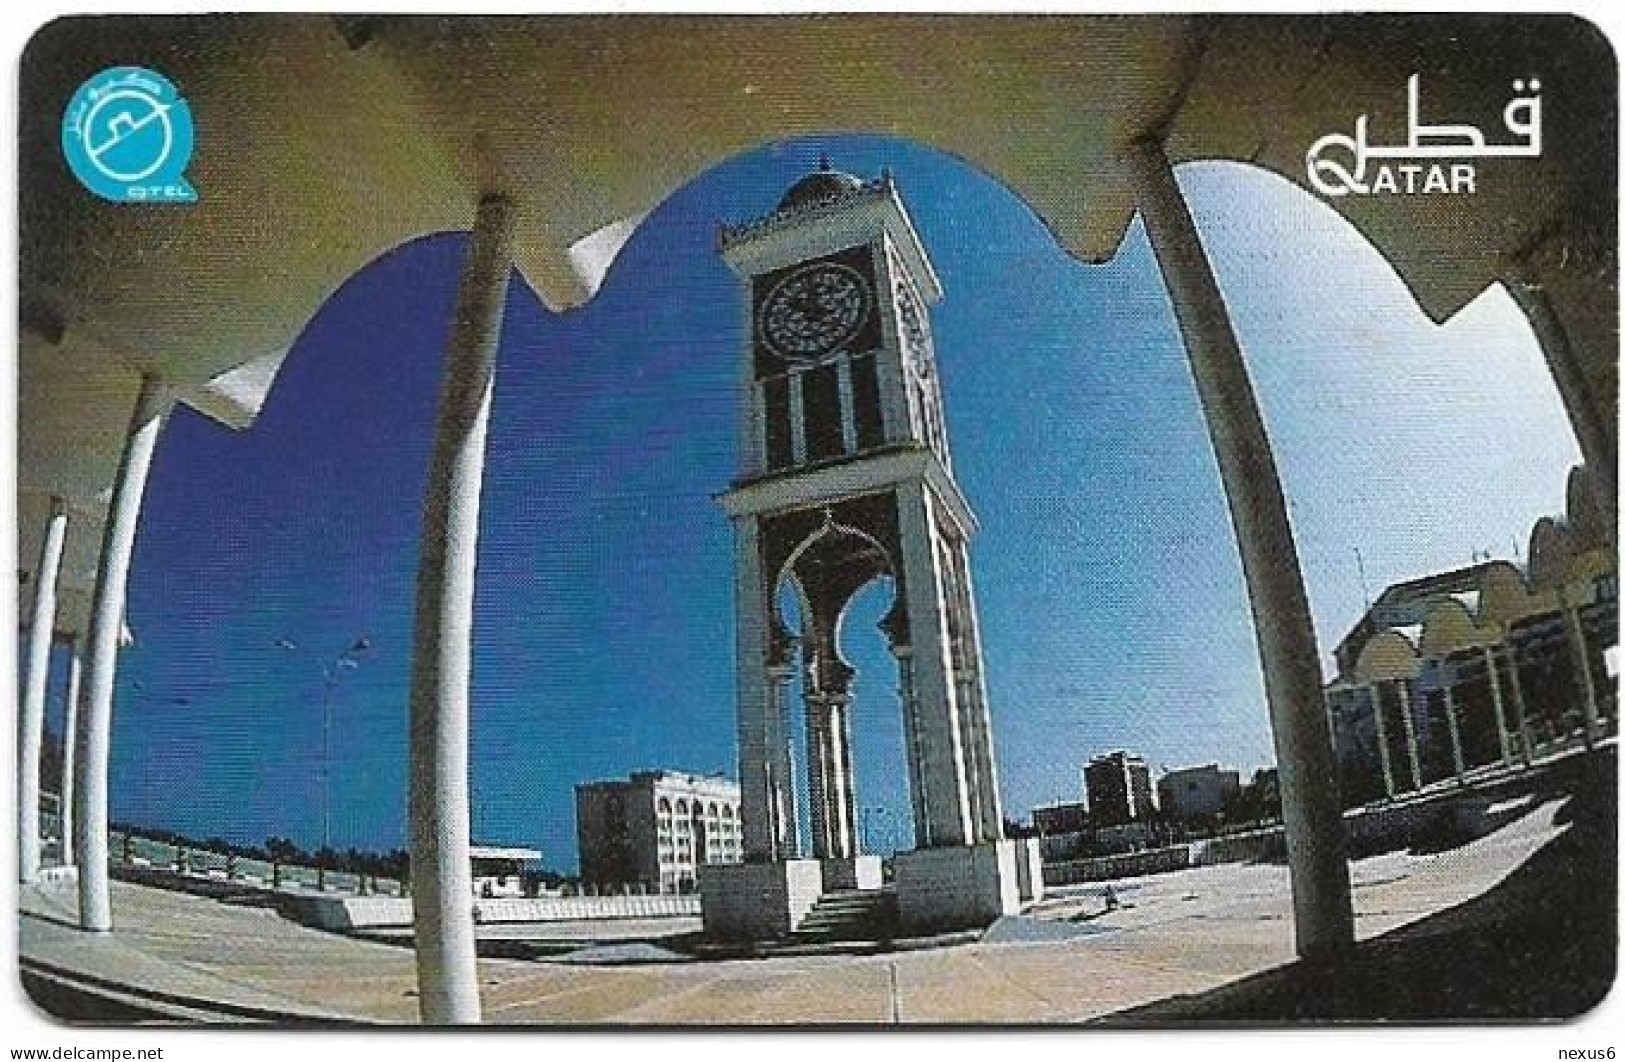 Qatar - Q-Tel - Autelca - Clock Tower, 1996, 20QR, 70.000ex, Used - Qatar